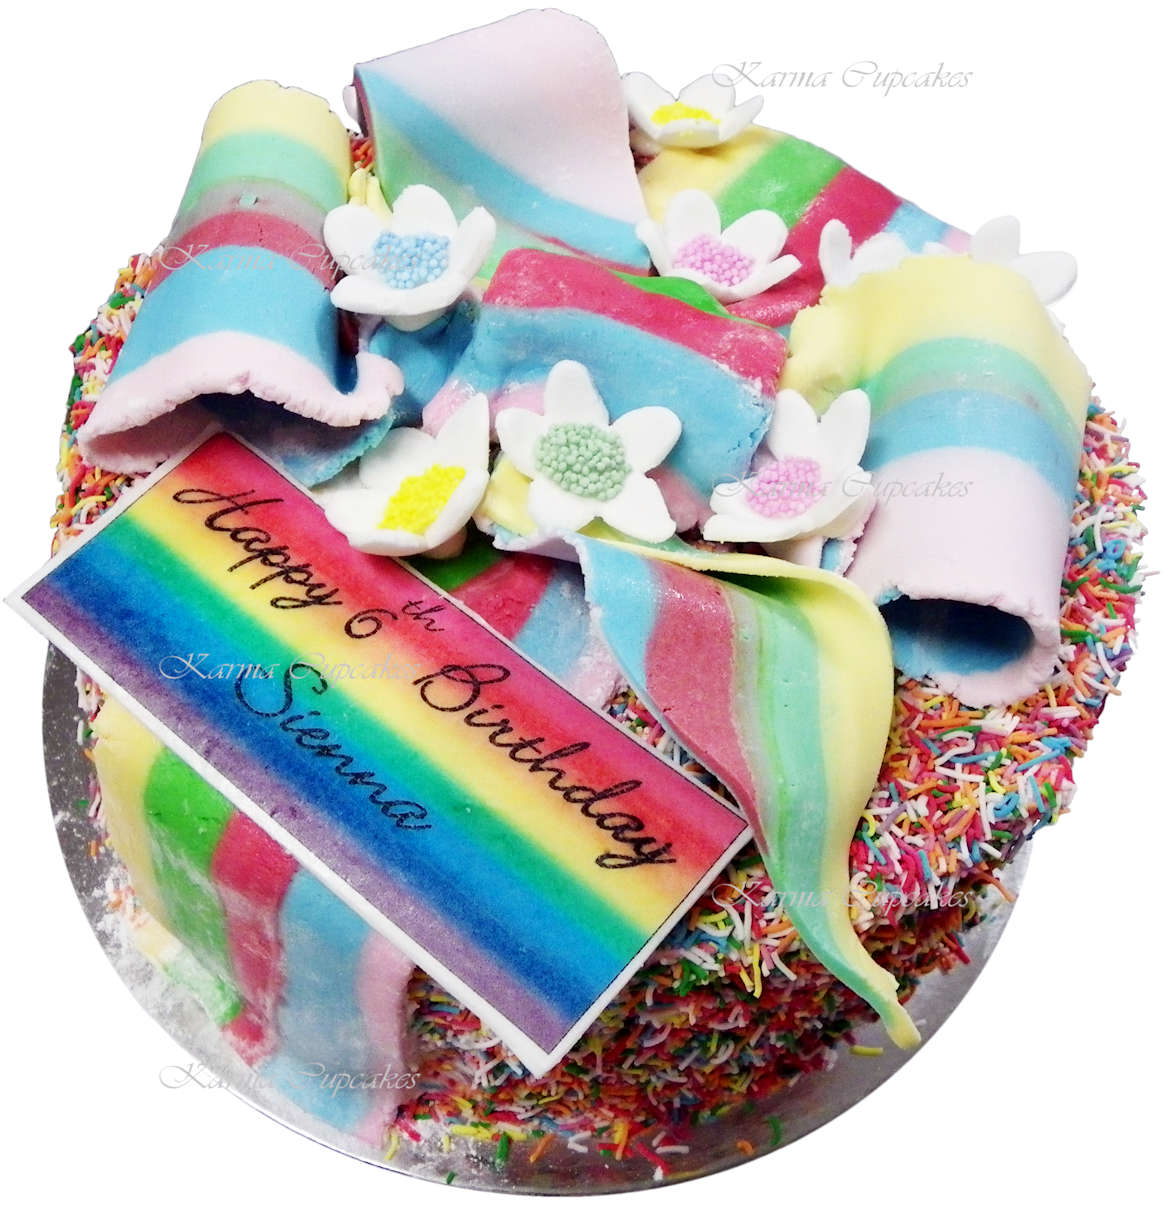 Rainbow gateaux birthday cake copy